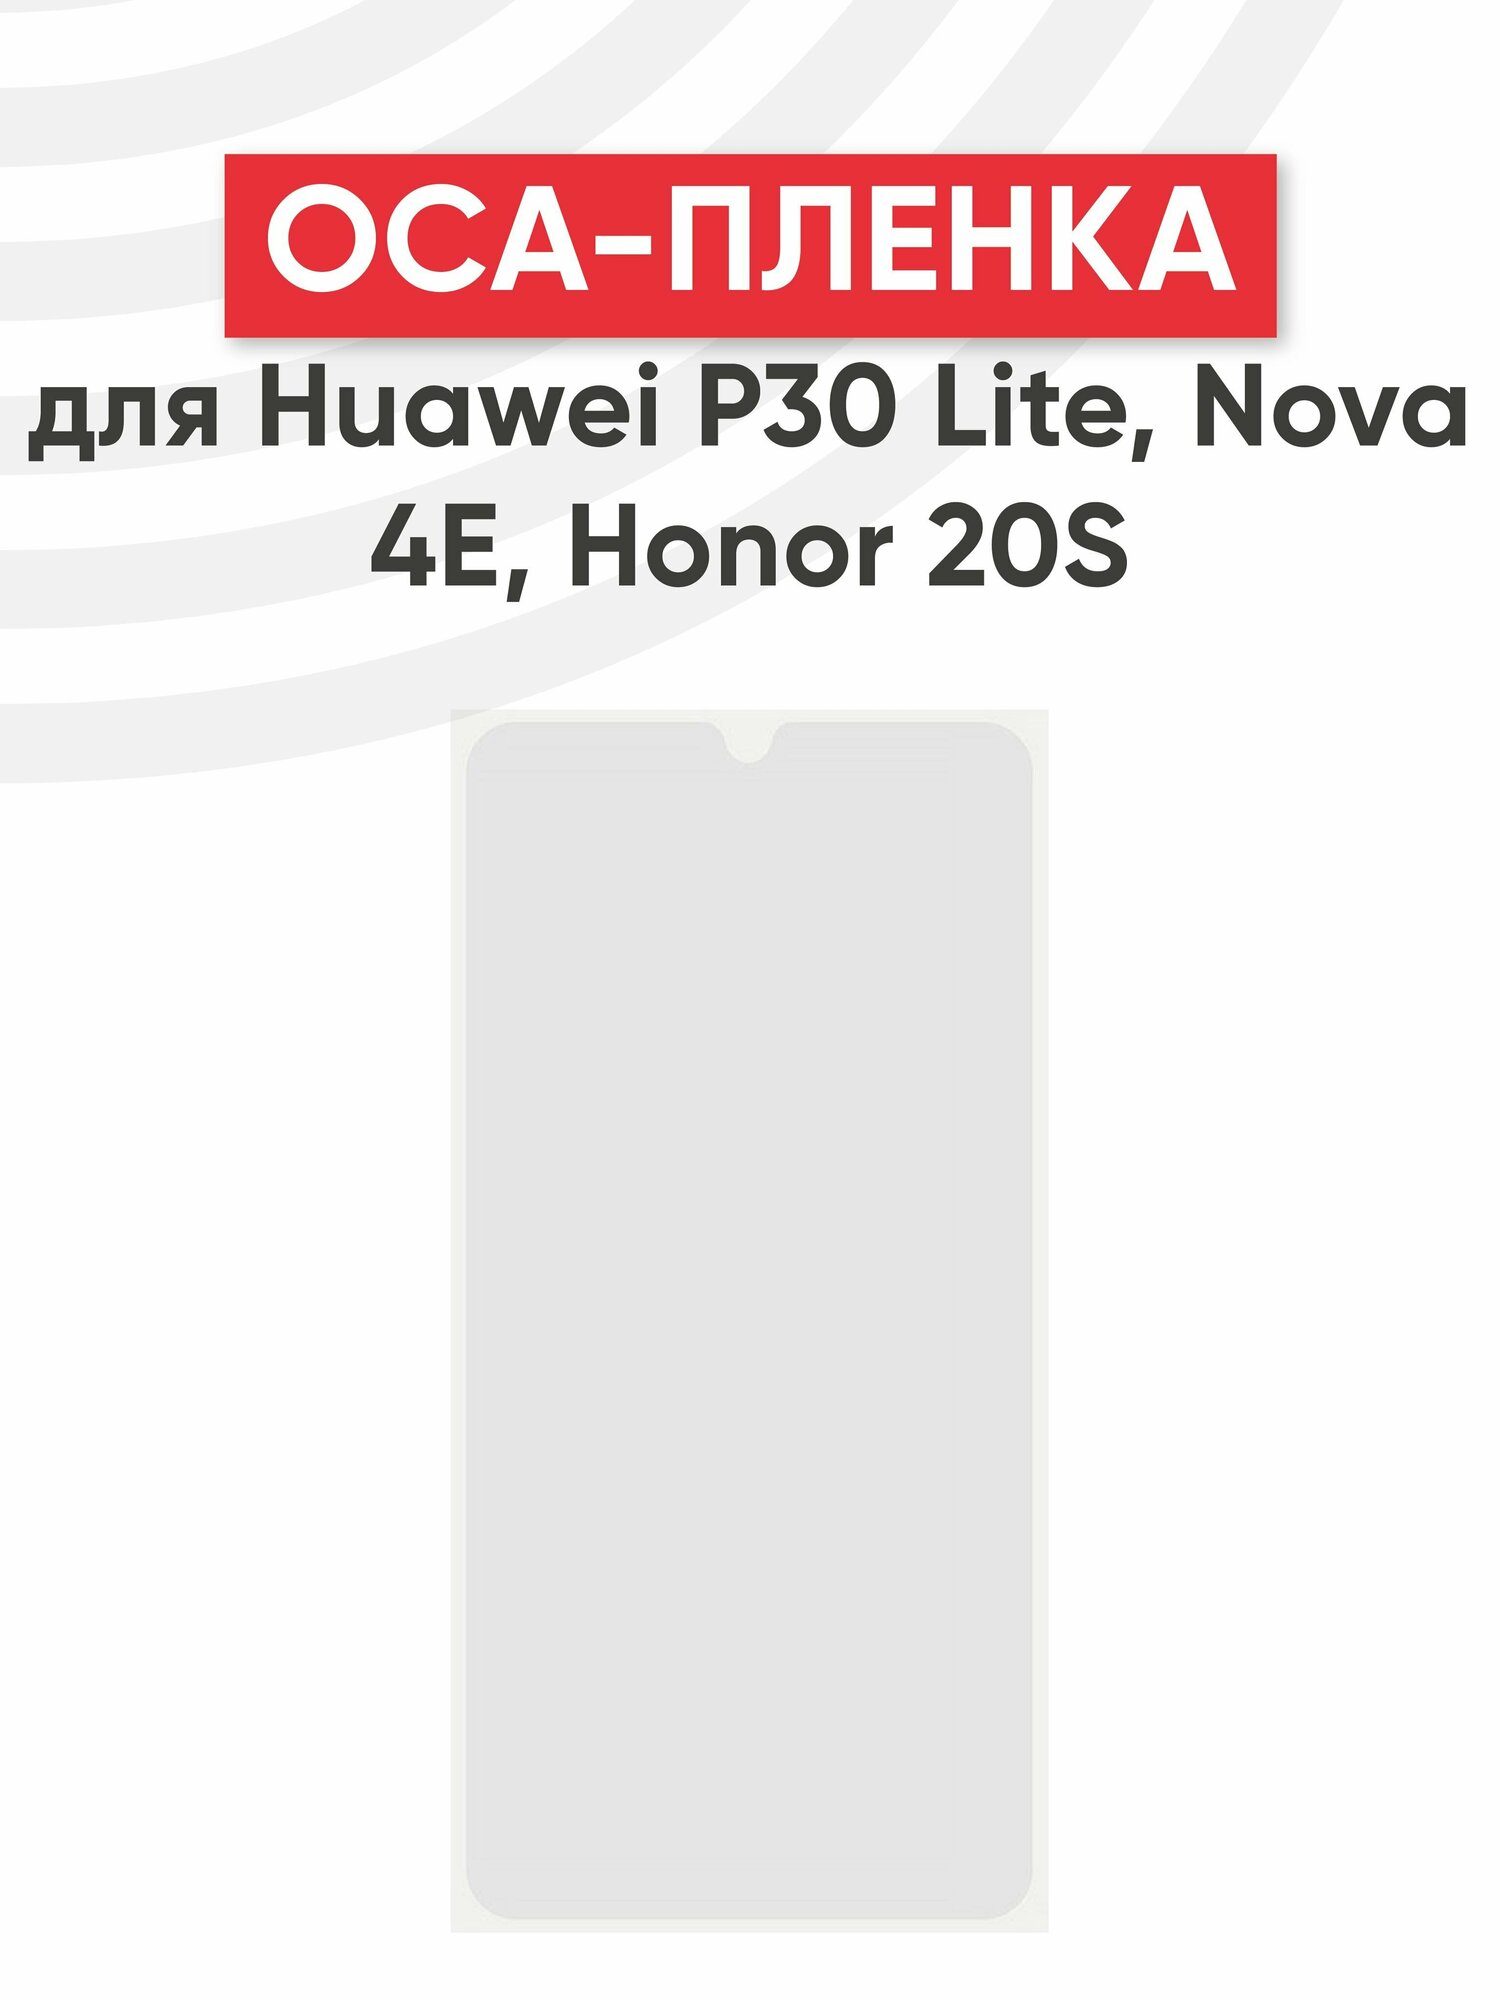 OCA пленка (клей) для мобильного телефона (смартфона) Huawei P30 Lite, Nova 4E, 20S